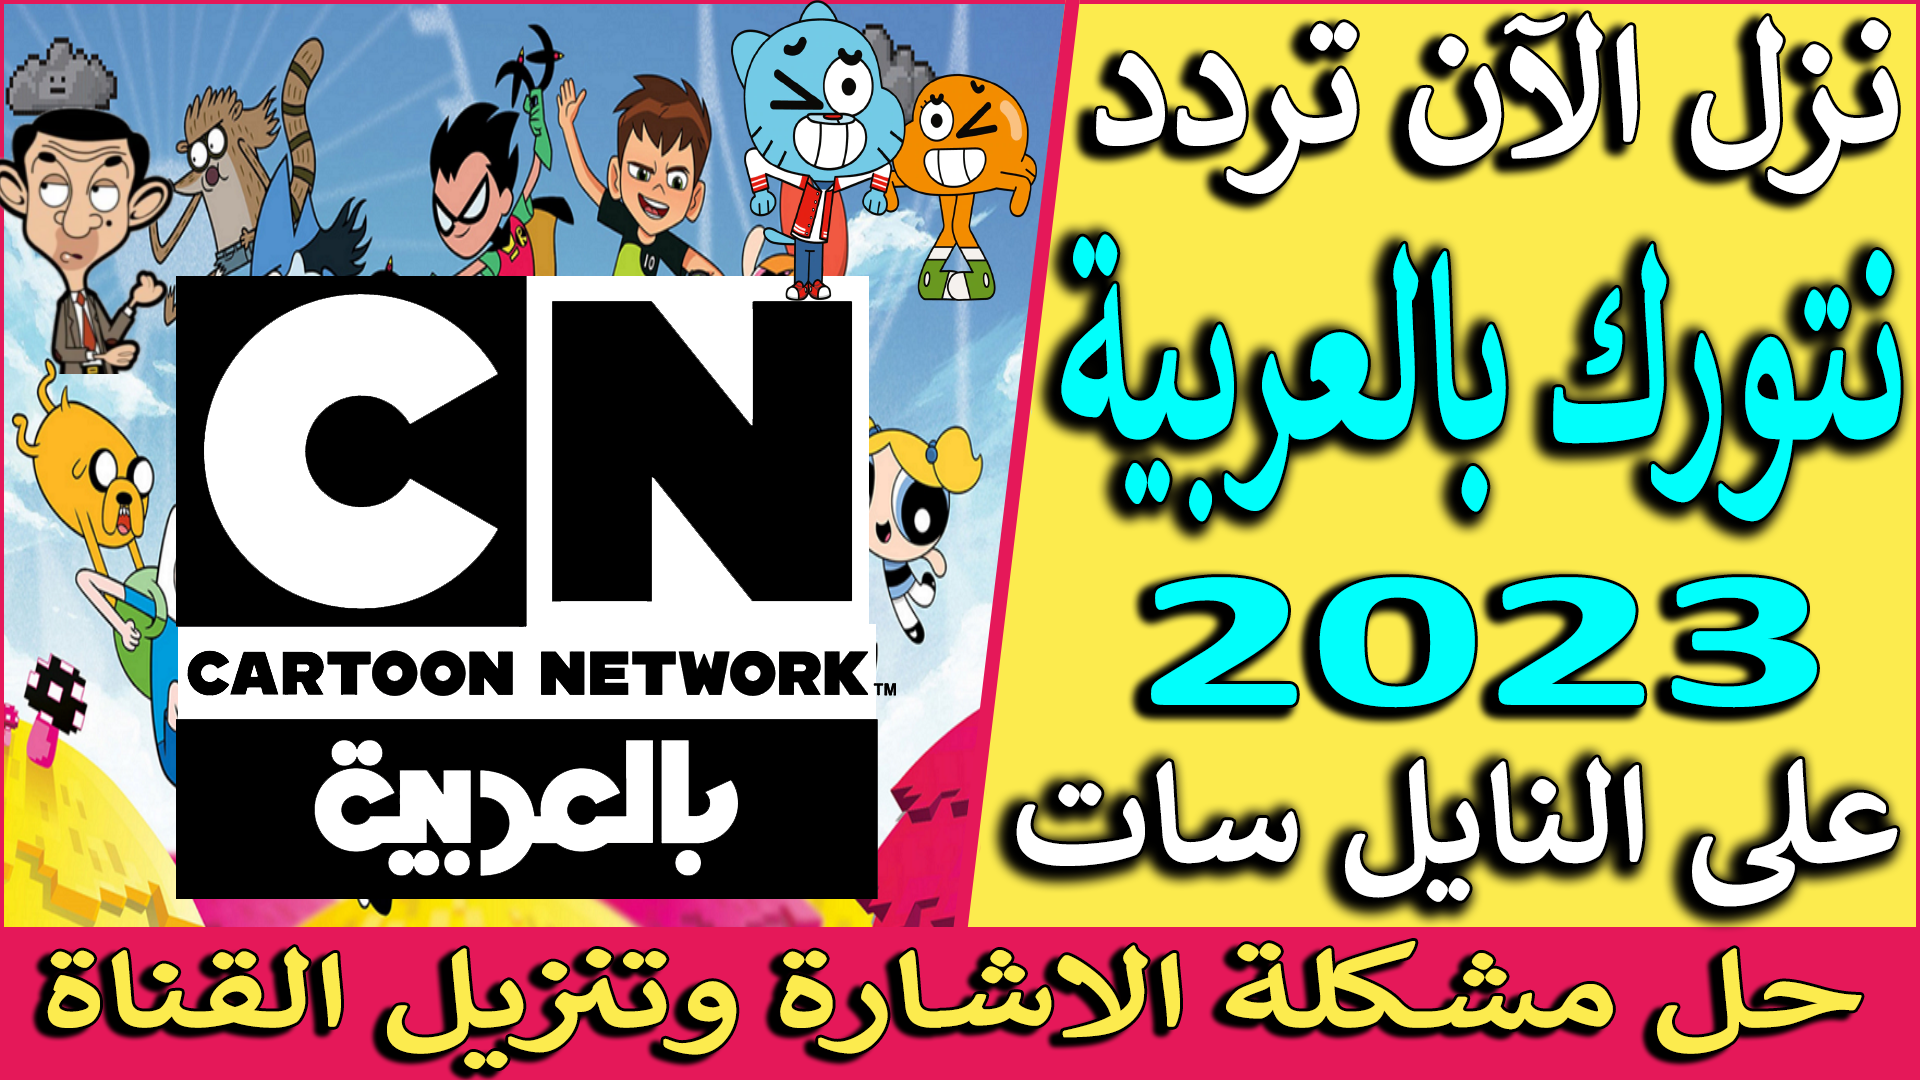 تردد قناة cn بالعربية الجديد 2023 نايل سات